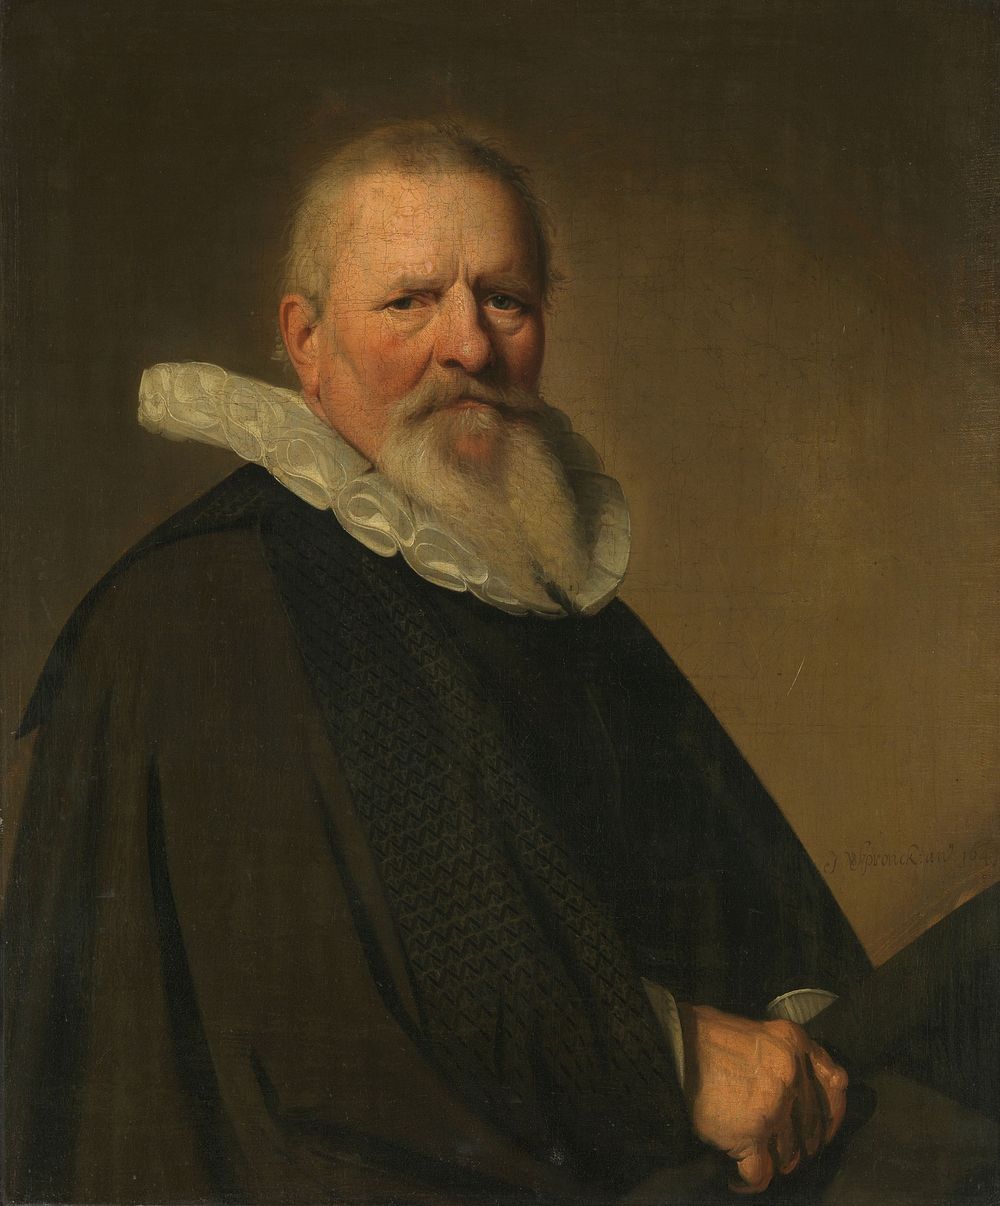 Pieter Jacobsz Schout (1570-1645), Burgomaster of Haarlem (1641) by Johannes Cornelisz Verspronck